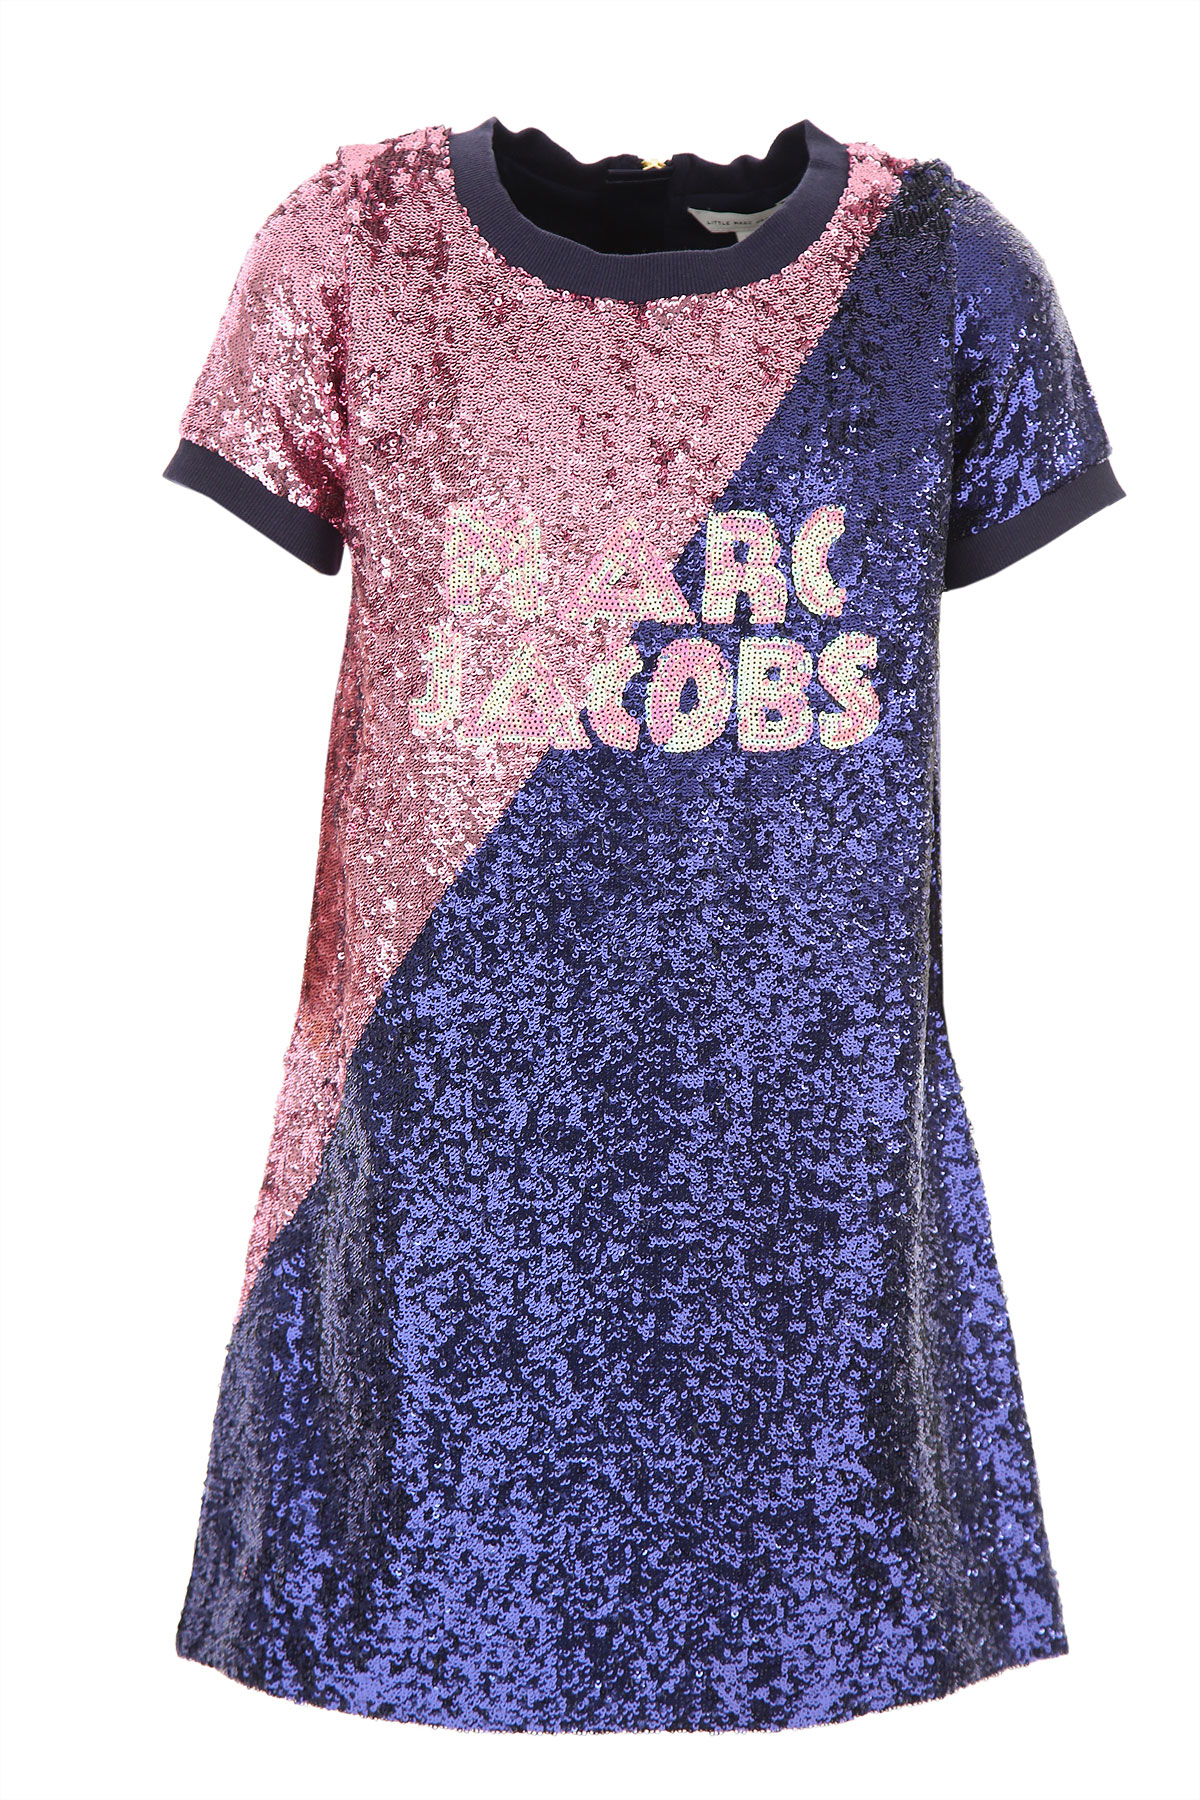 Marc Jacobs Kleid für Mädchen Günstig im Sale, Blau, Polyester, 2017, 10Y 12Y 14Y 6Y 8Y